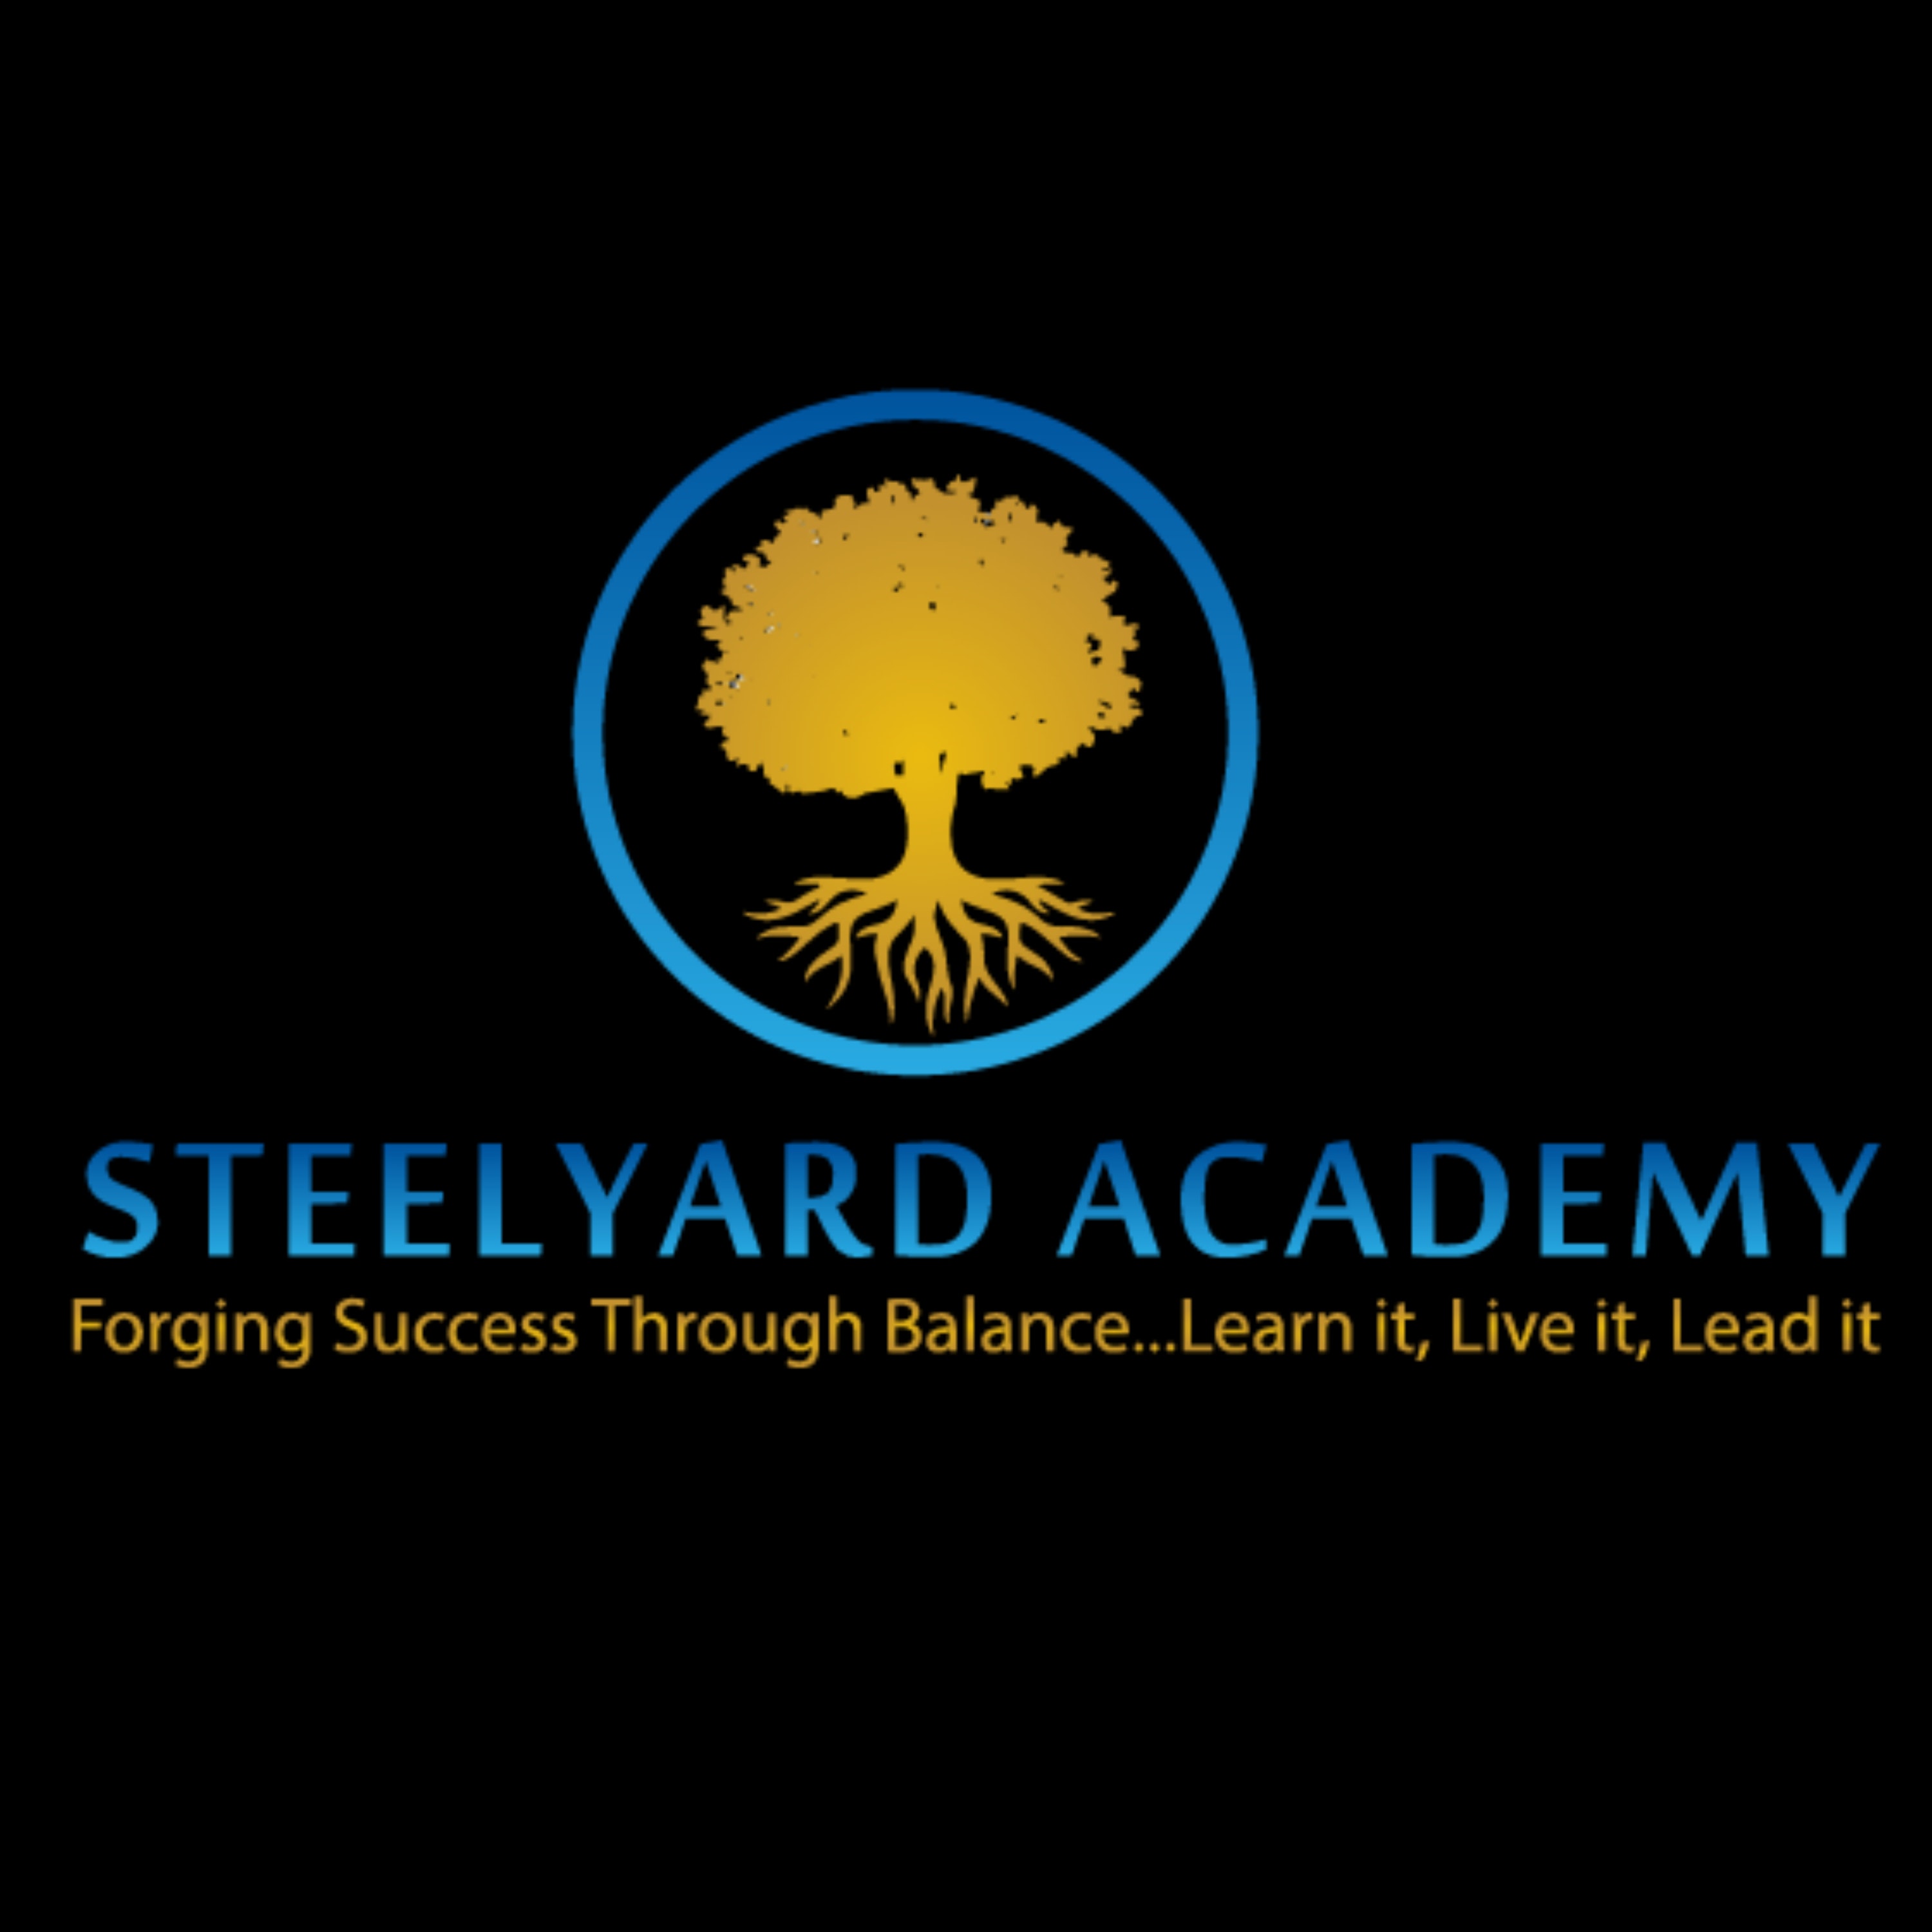 Steelyard Academy